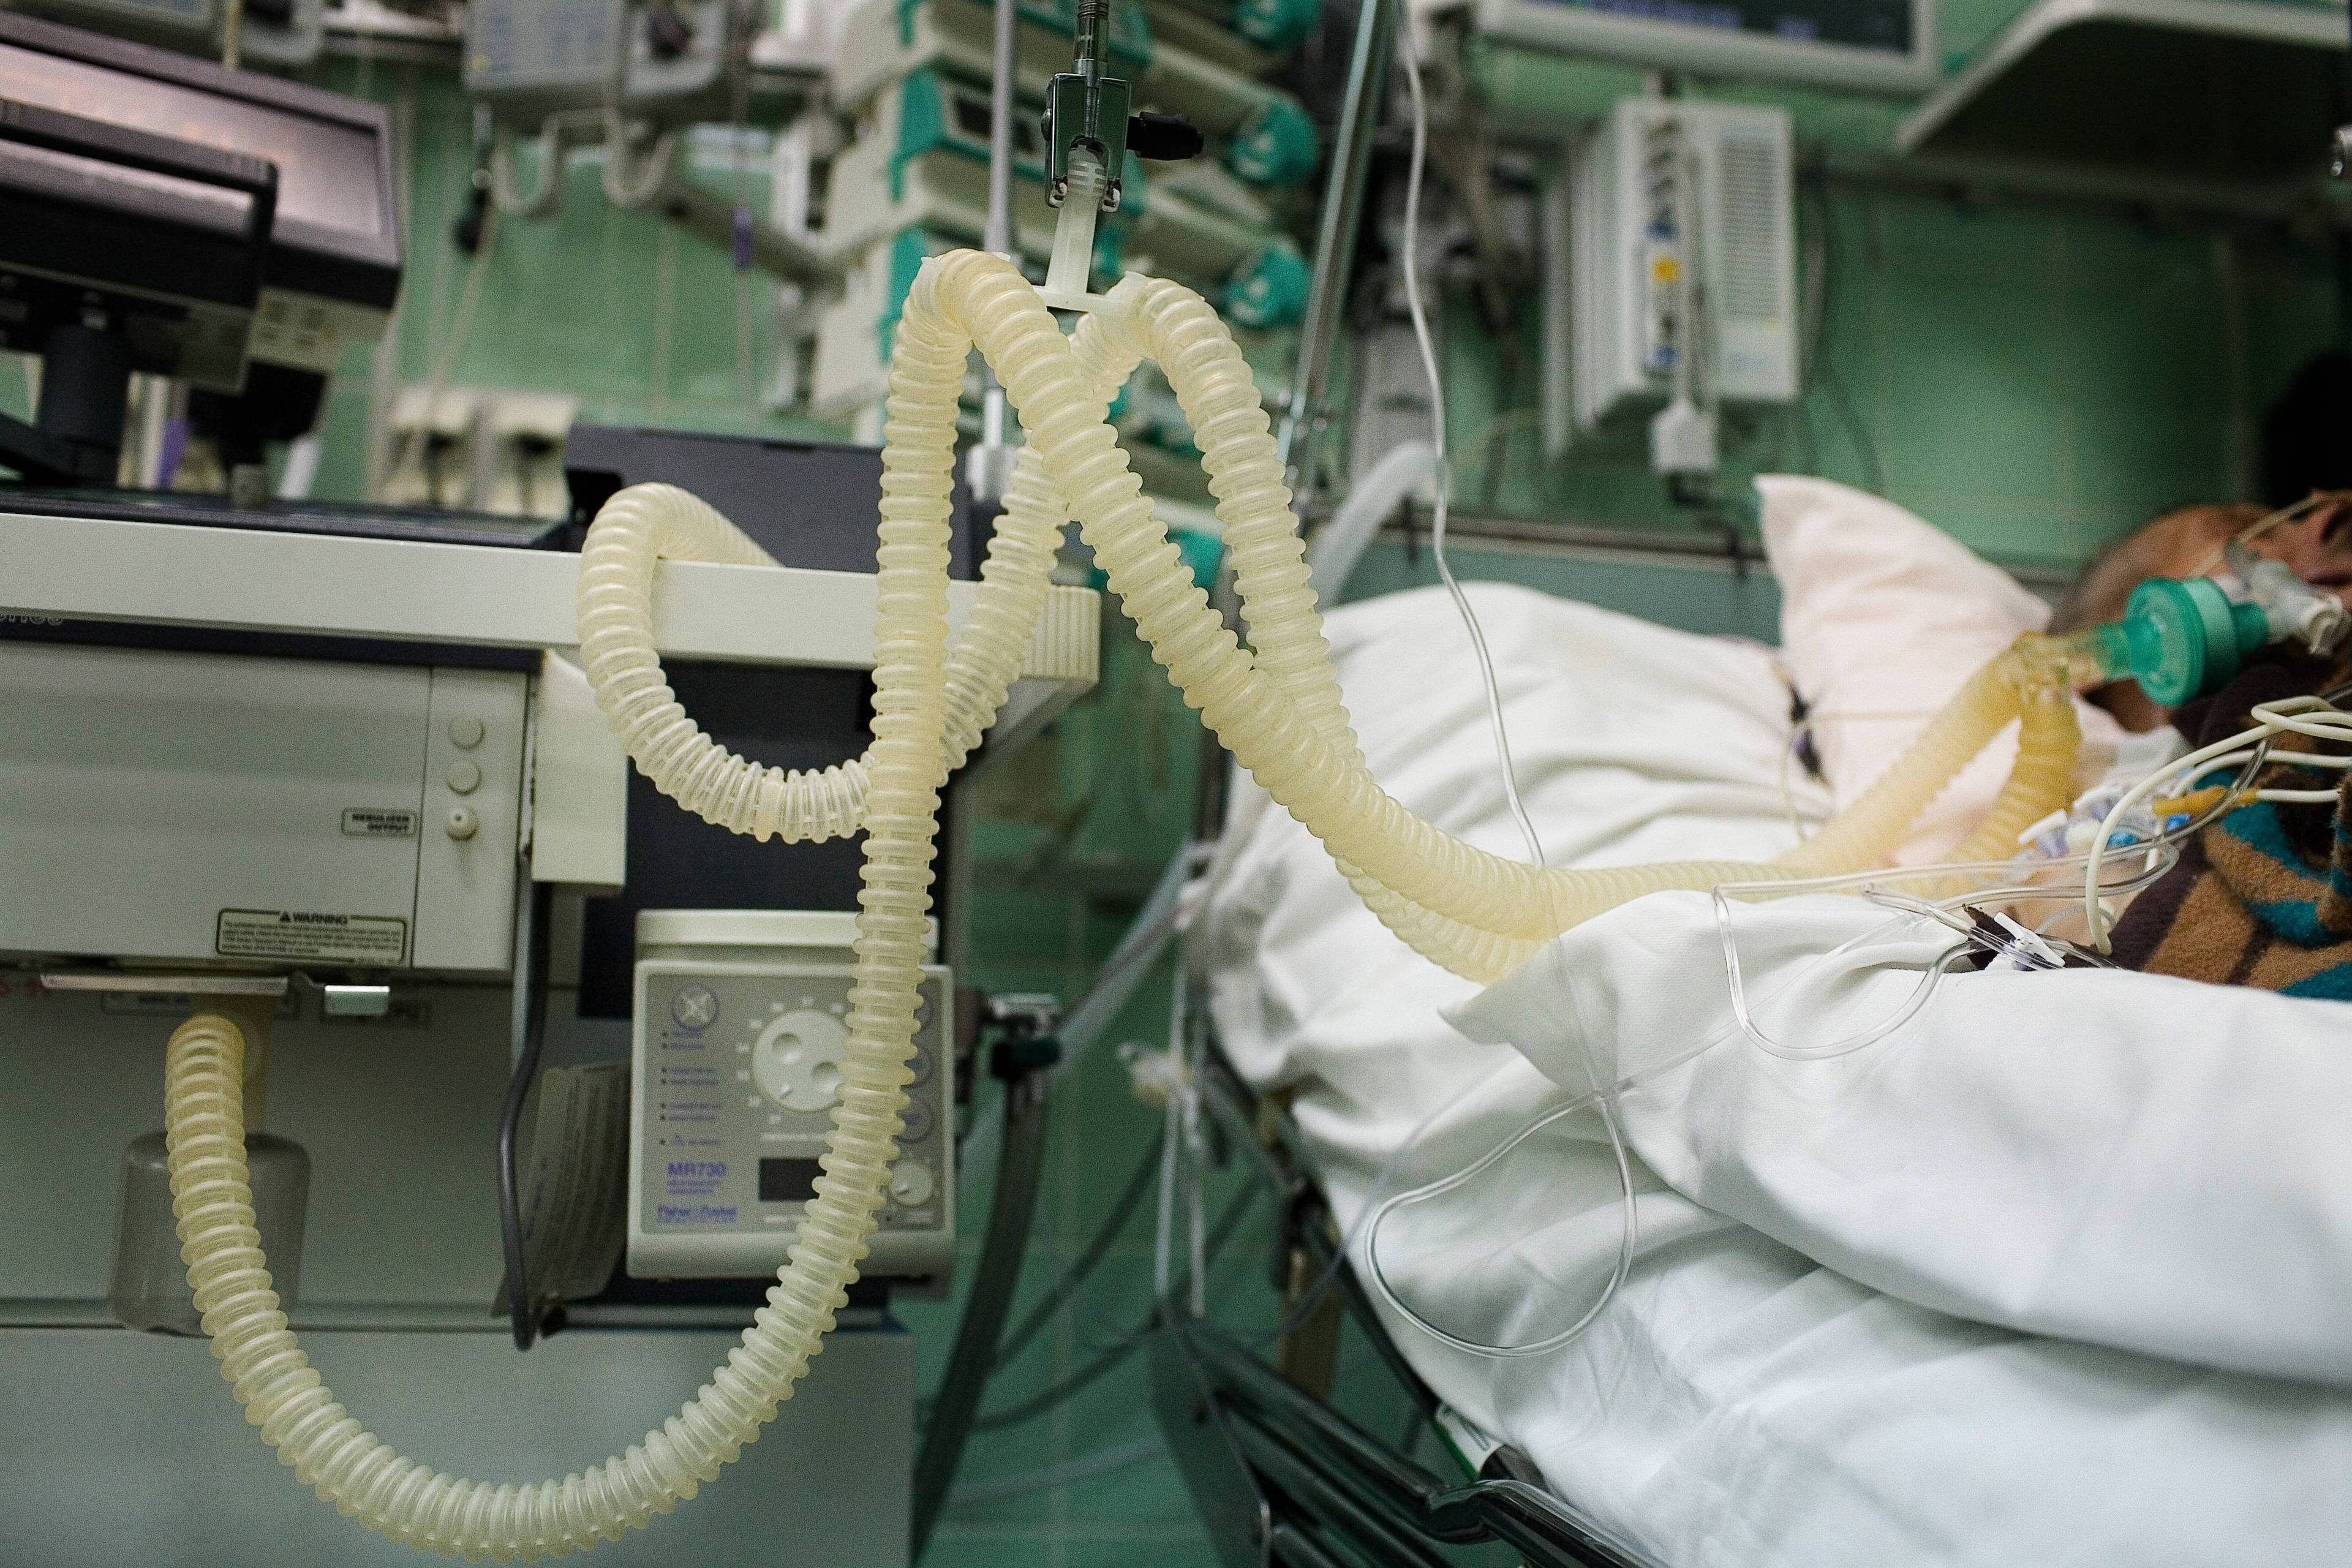 Pacjent w szpitalu podłączony rurkami do urządzeń podtrzymujących życie